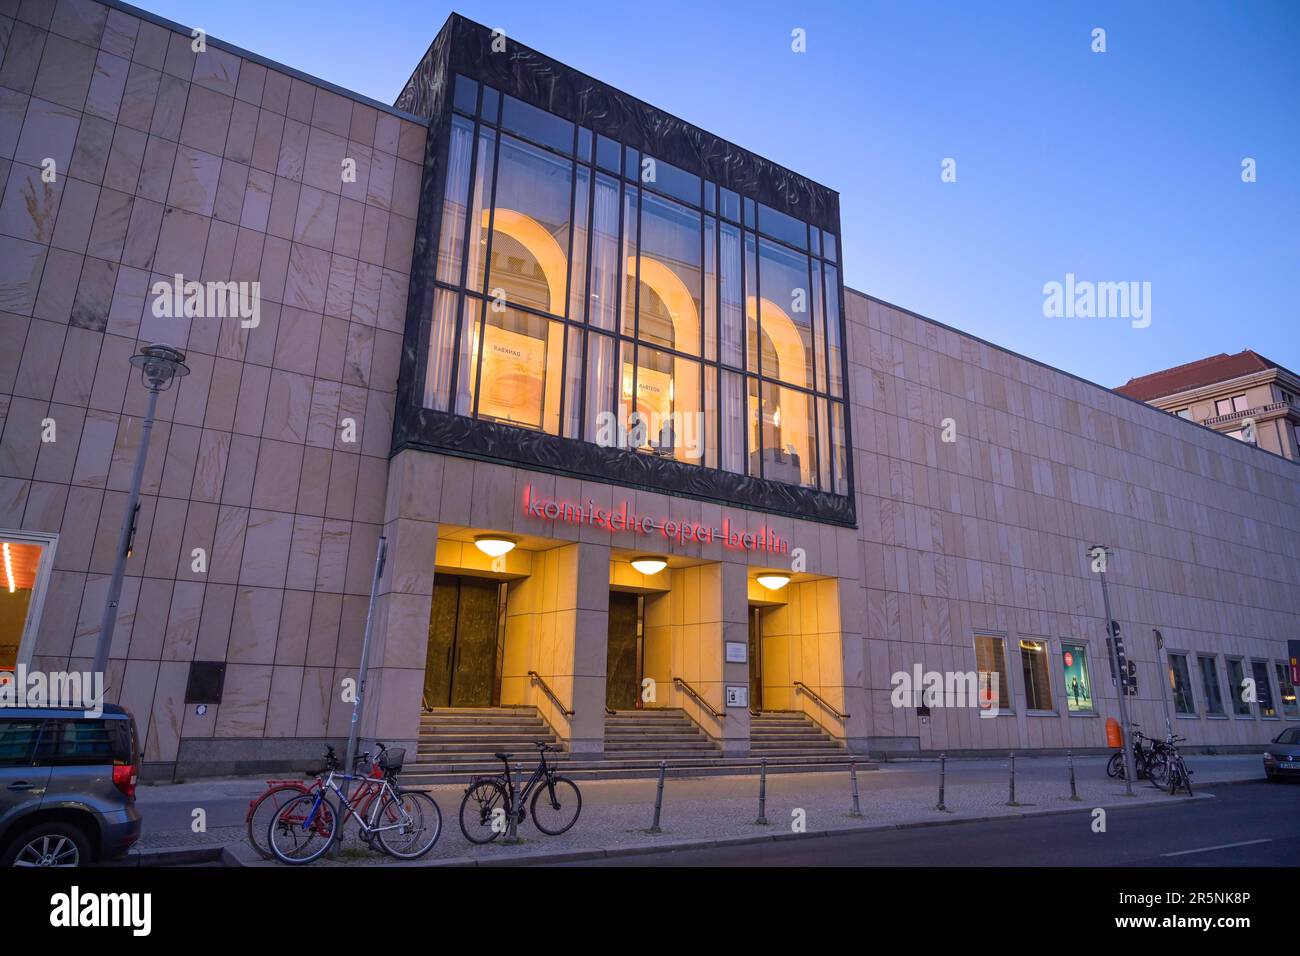 Komische Oper, Behrenstrasse, Mitte, Berlin, Germany Stock Photo